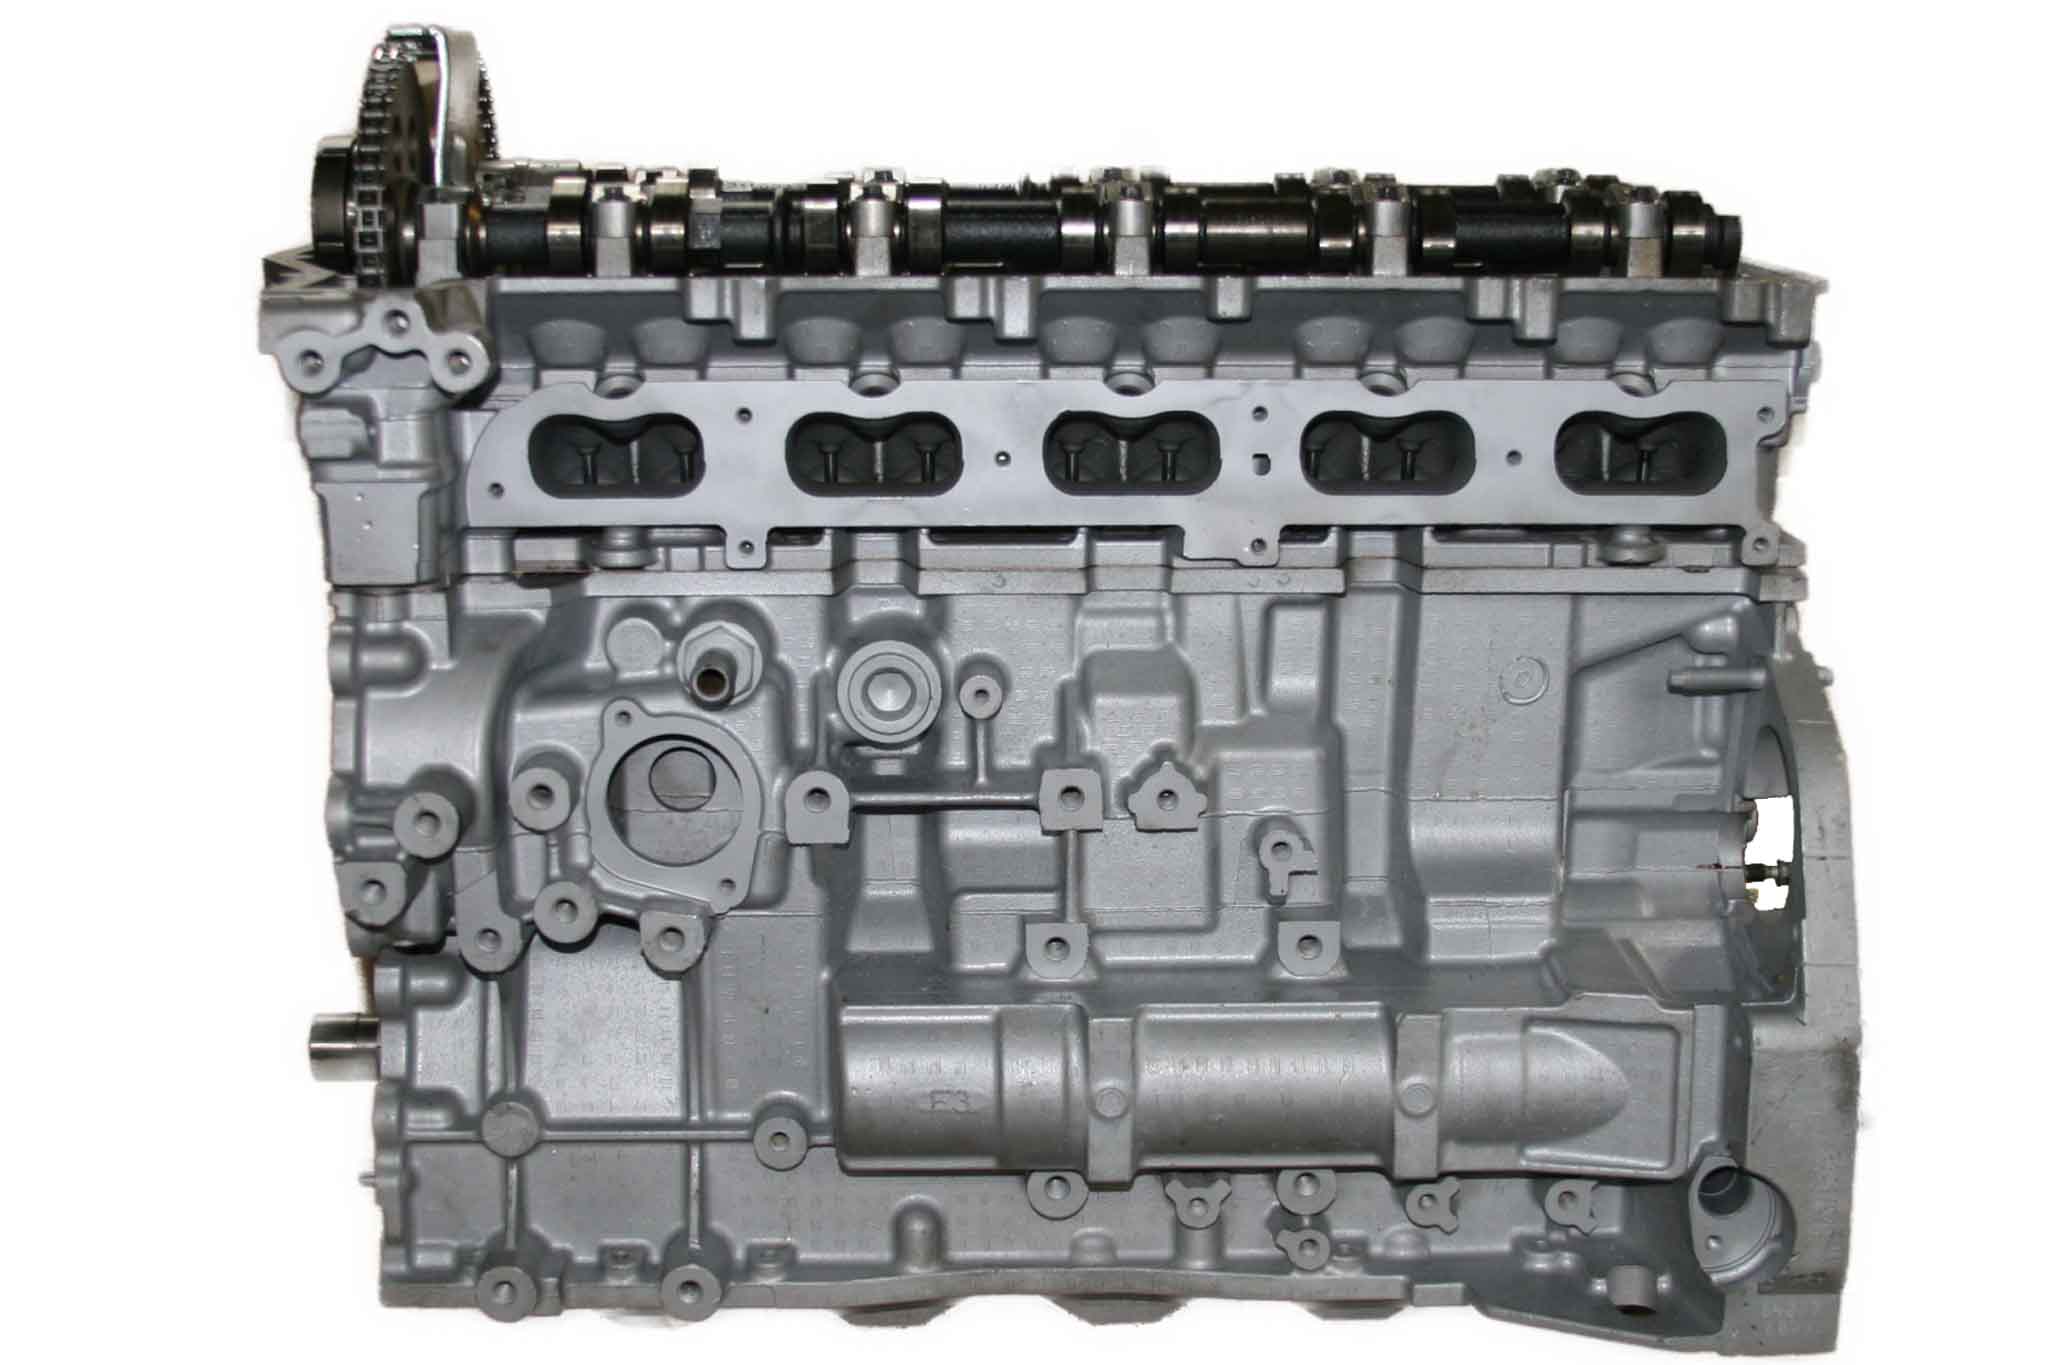 2004-2005 Chevy Colorado & GMC Canyon 3.5L L5 Rebuilt Engine Vin 6